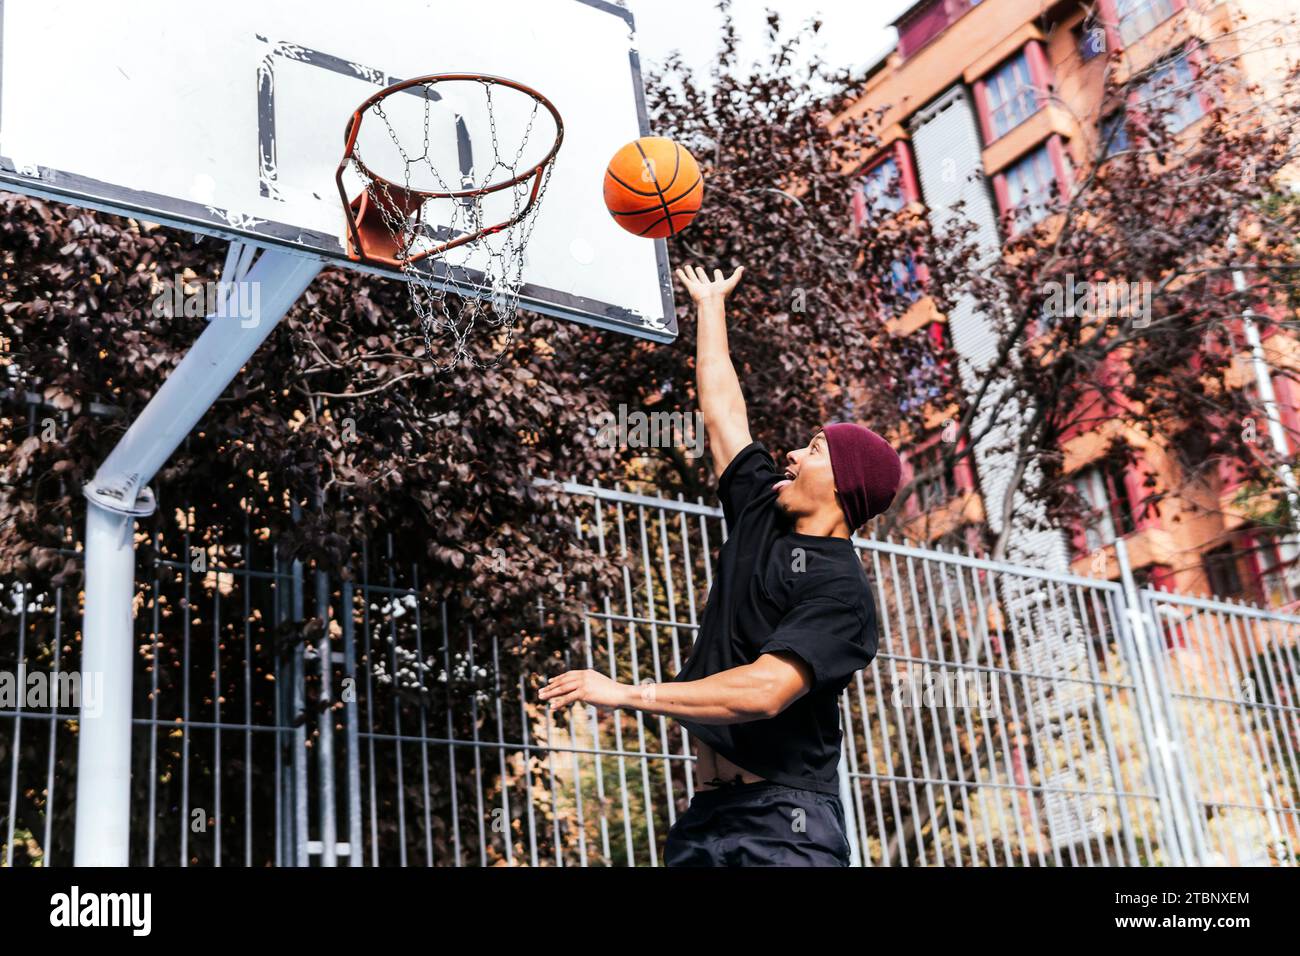 multiethnic boy shooting basket playing basketball Stock Photo